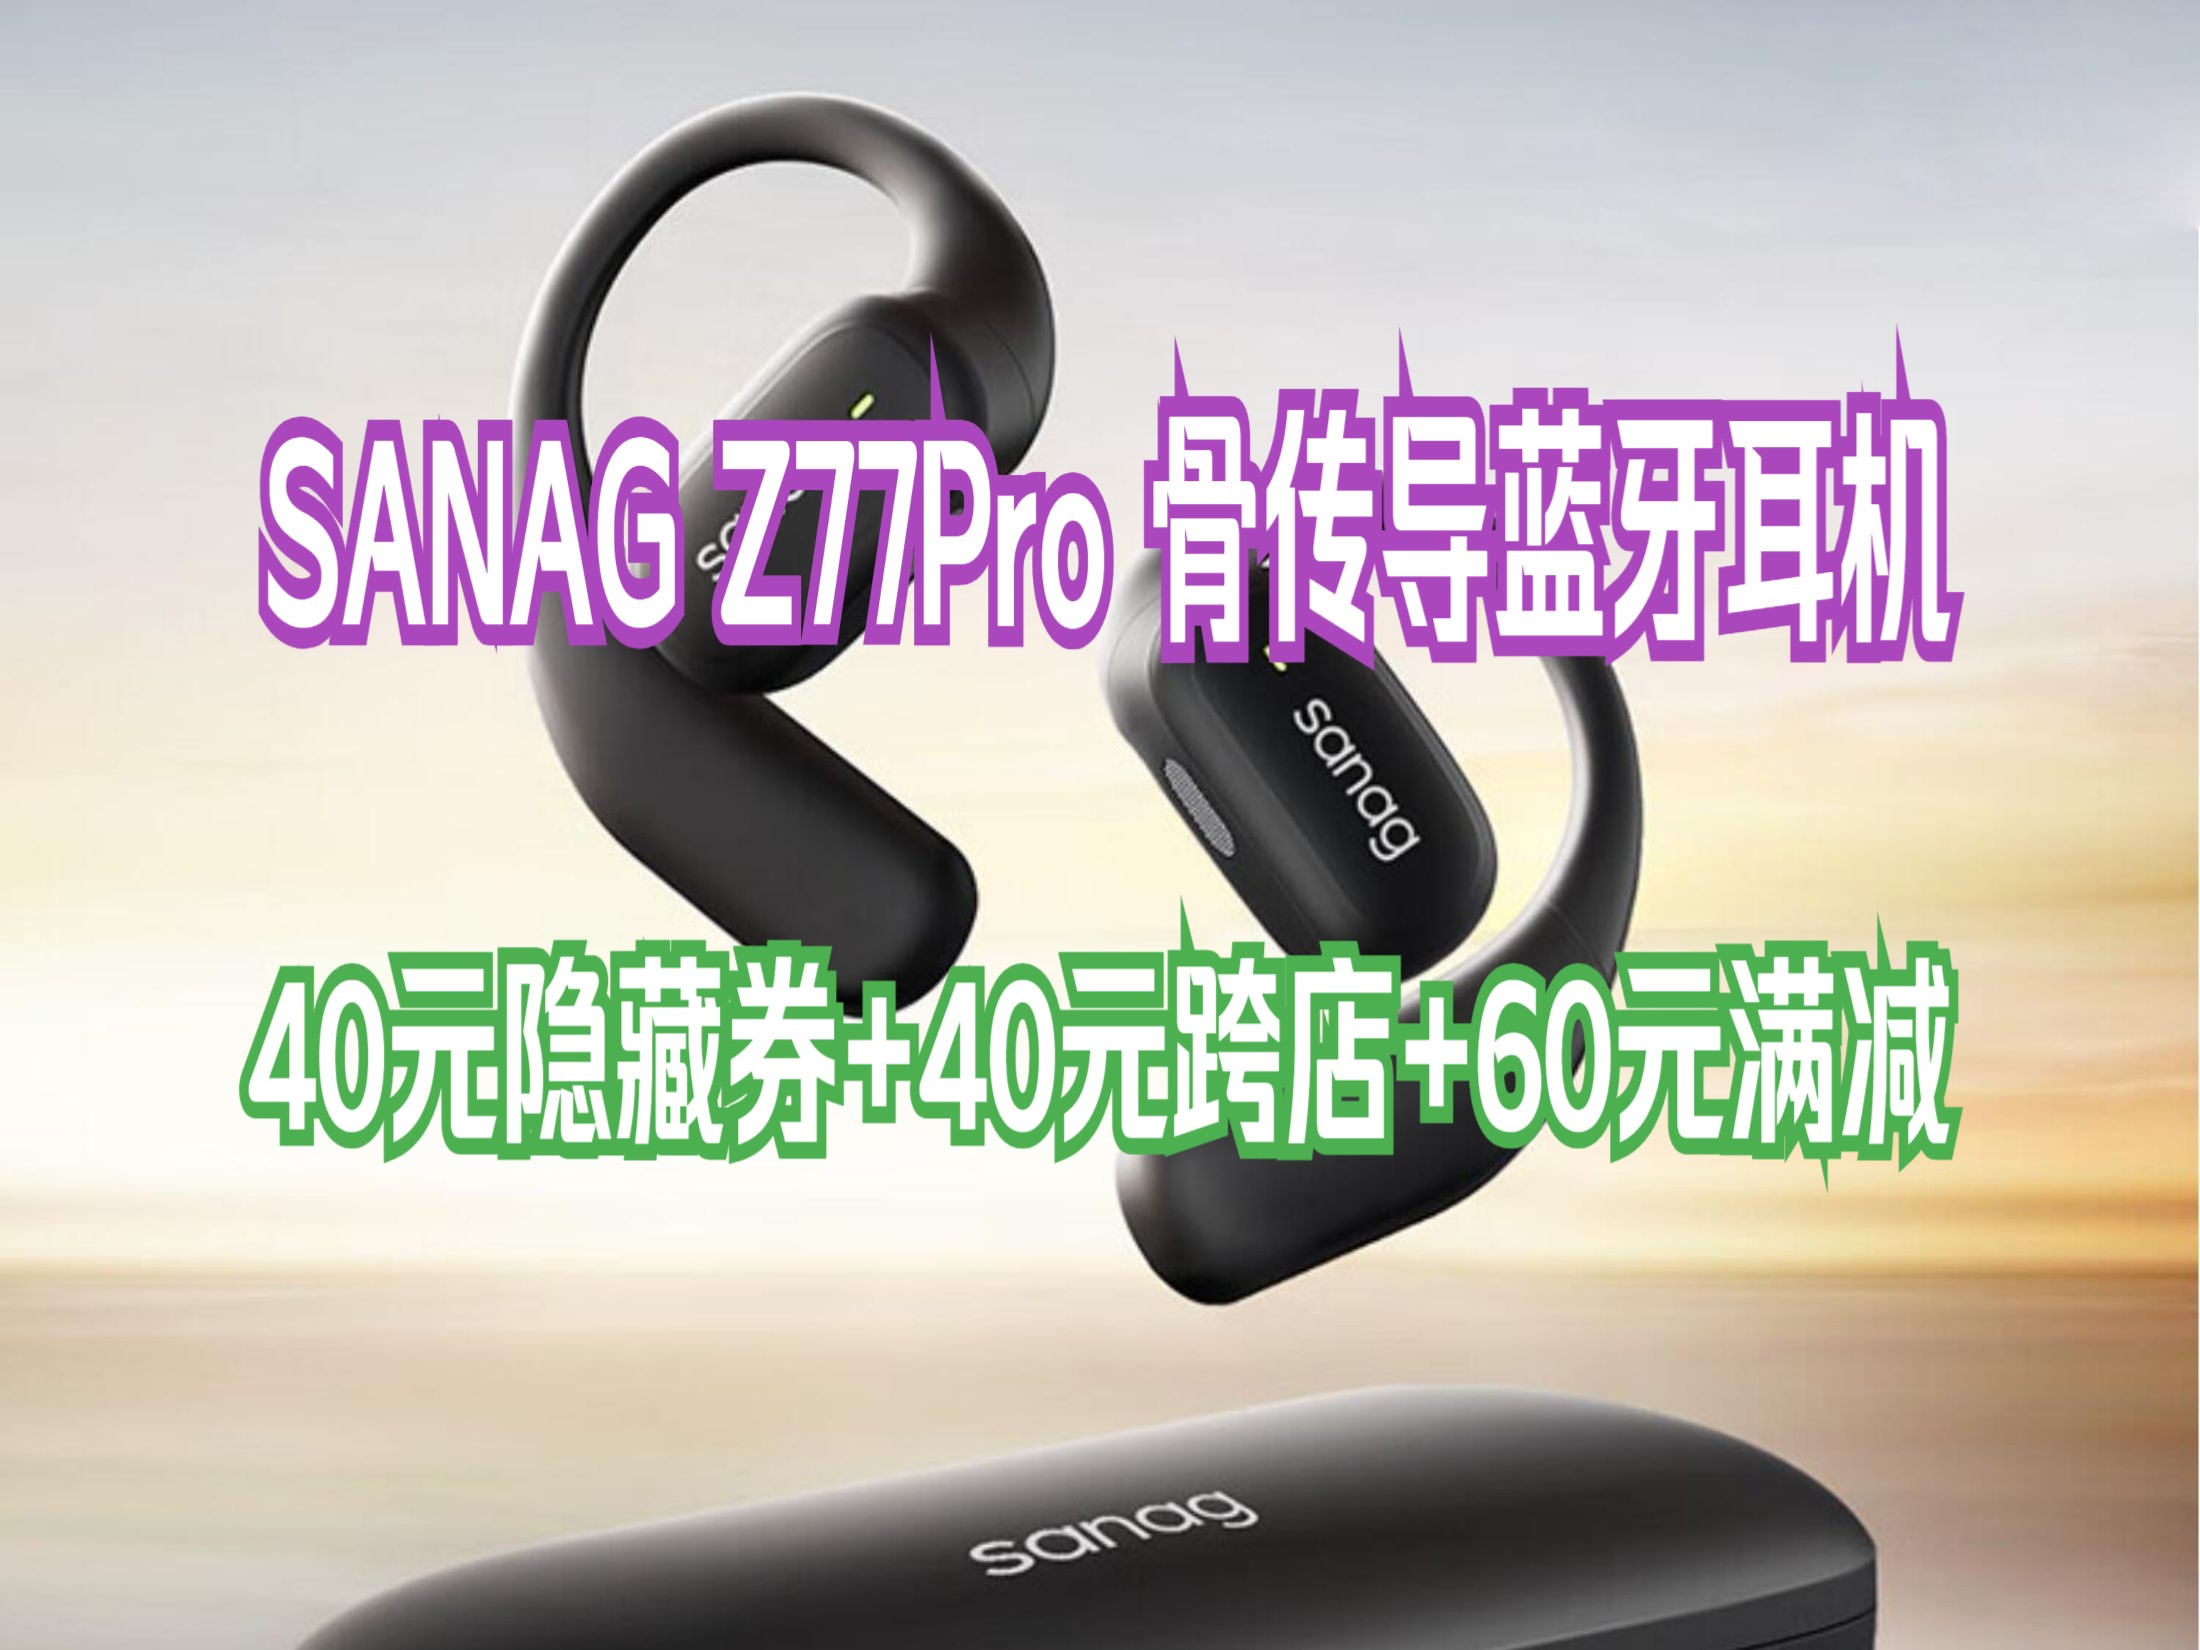 SANAG塞那 柏林之声 超感音质 Z77蓝牙耳机挂耳式骨传导概念不入耳开放式运动耳机通话降噪高端礼物 暖阳白丨空间音效丨舒适不漏音